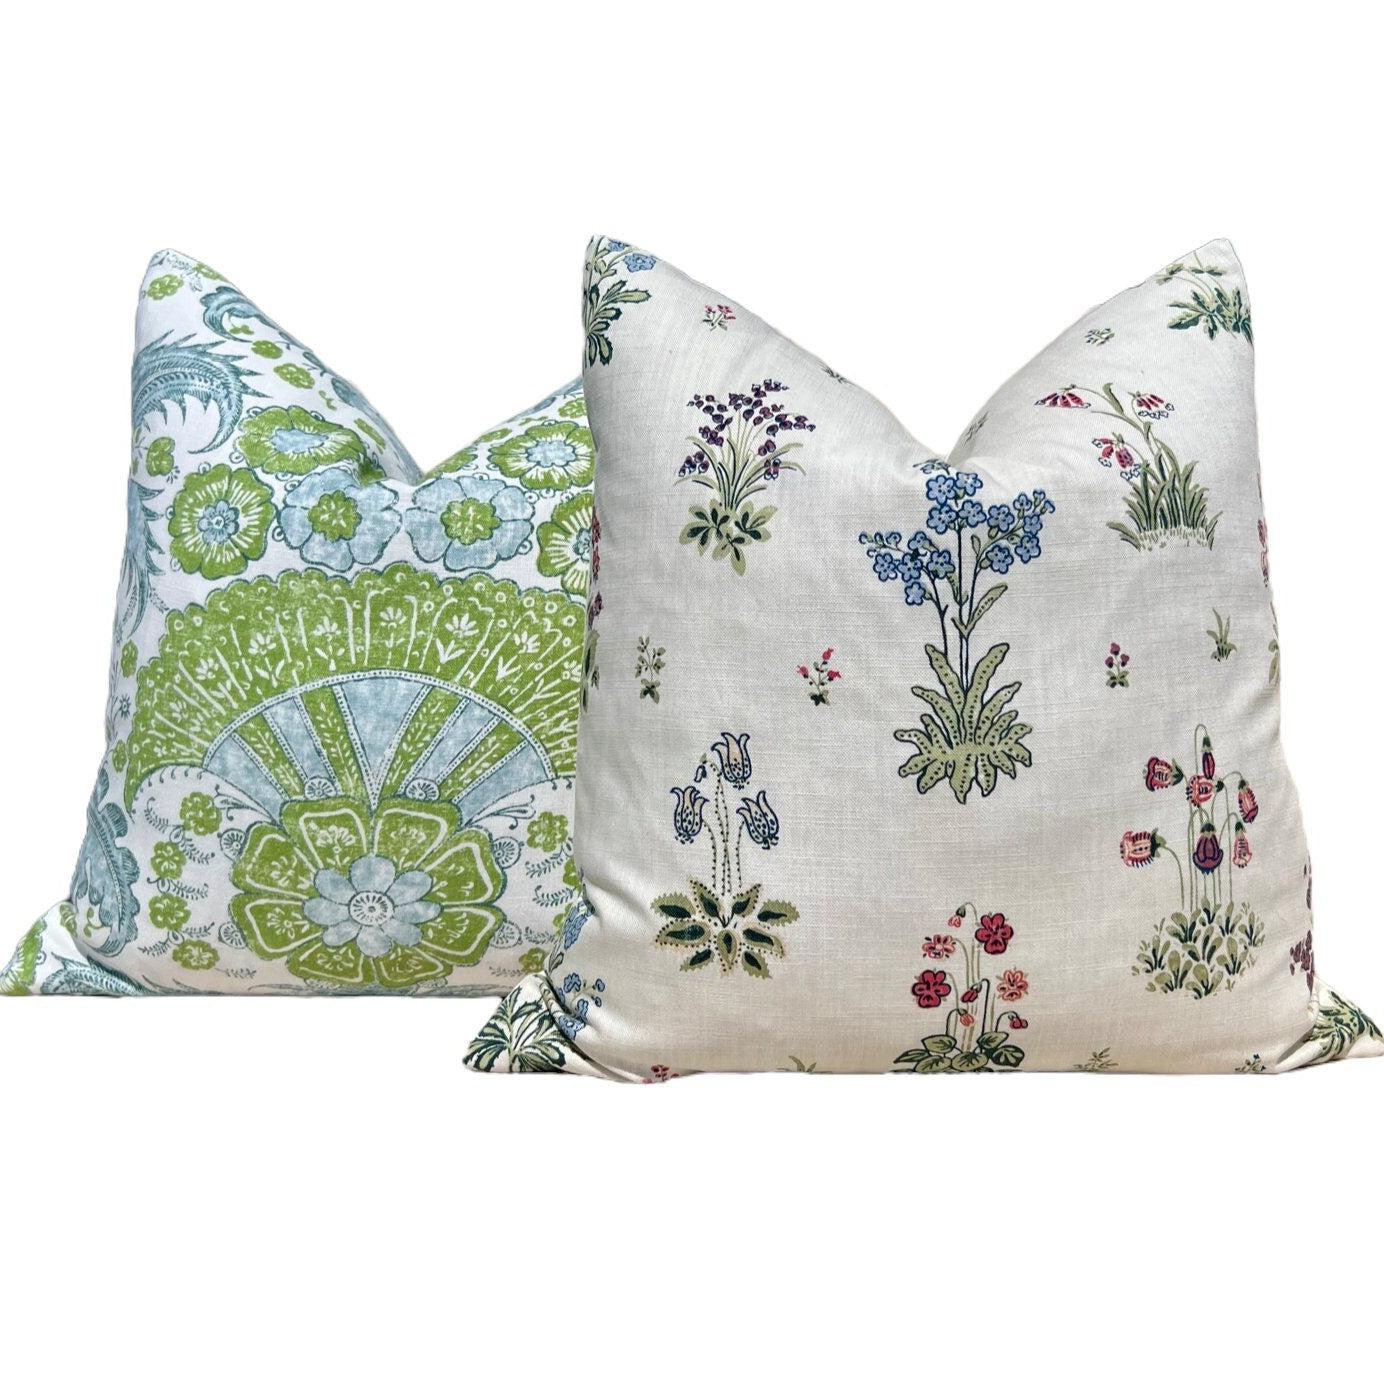 Schumacher Calicut Linen Pillow in Aqua and Green. Designer Pillows, High End Pillows, Aqua Blue Floral Pillow, Modern Floral Pillow